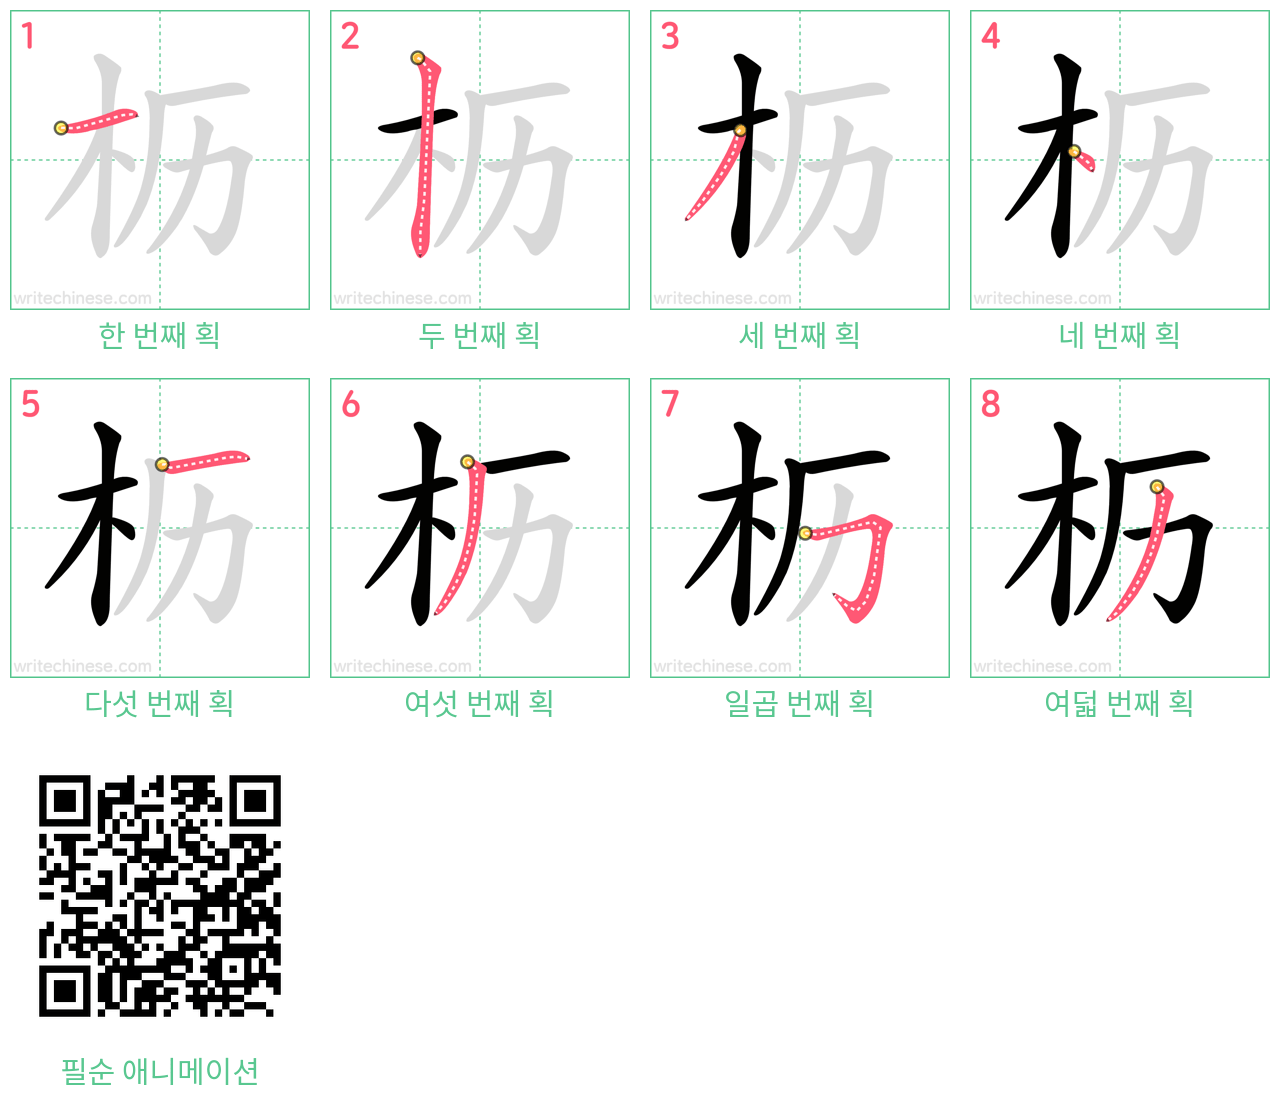 枥 step-by-step stroke order diagrams